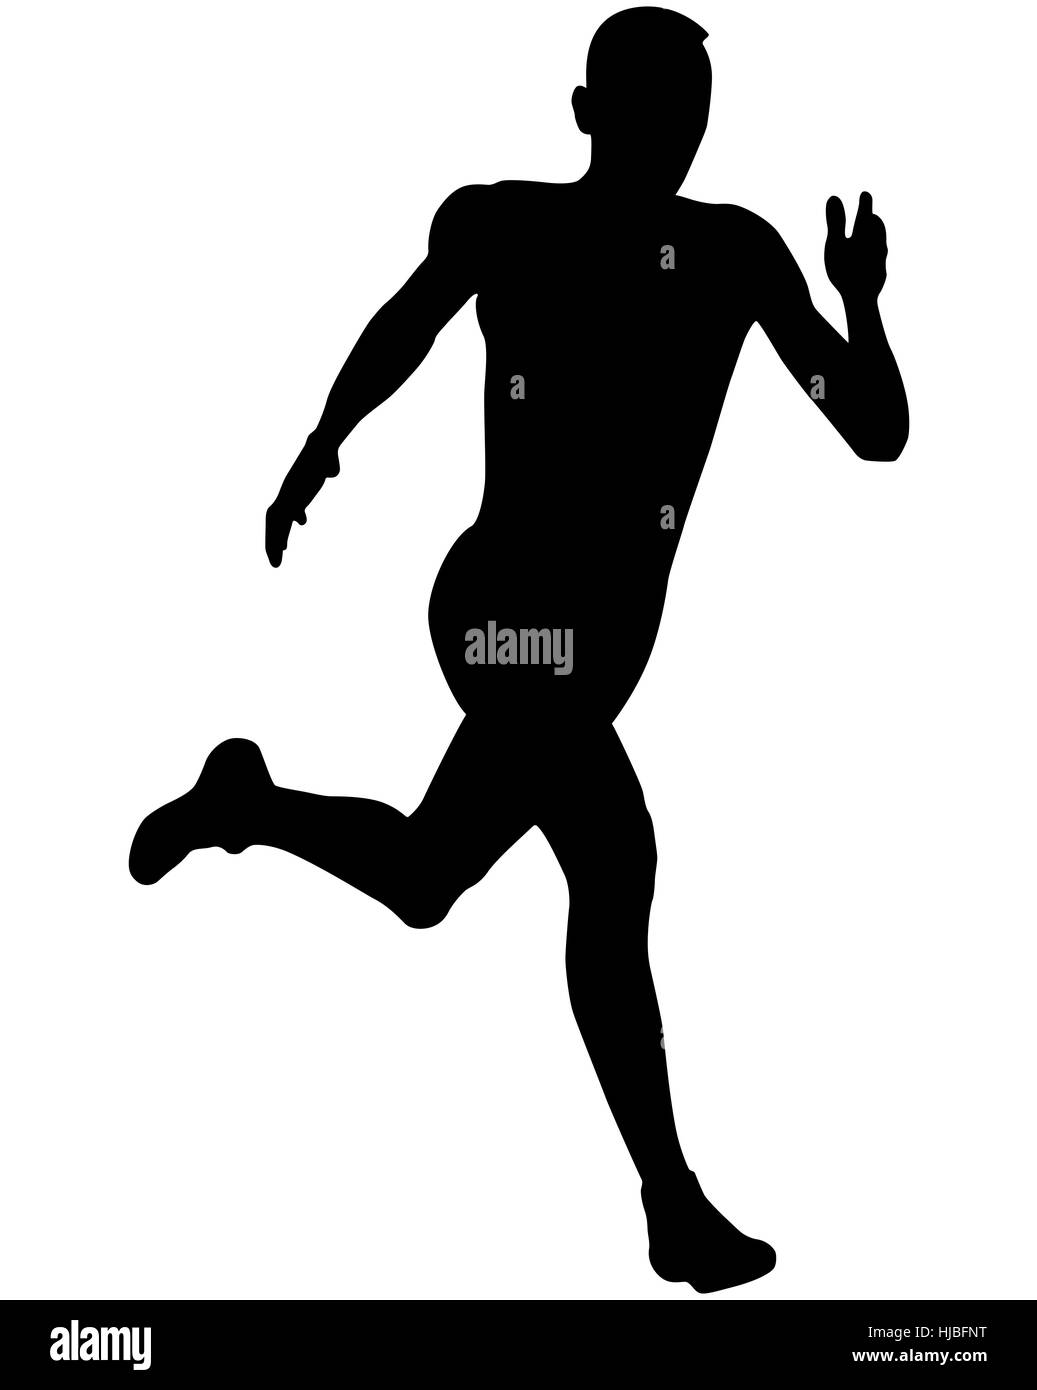 athlete sprinter runner running black silhouette vector illustration Stock Photo